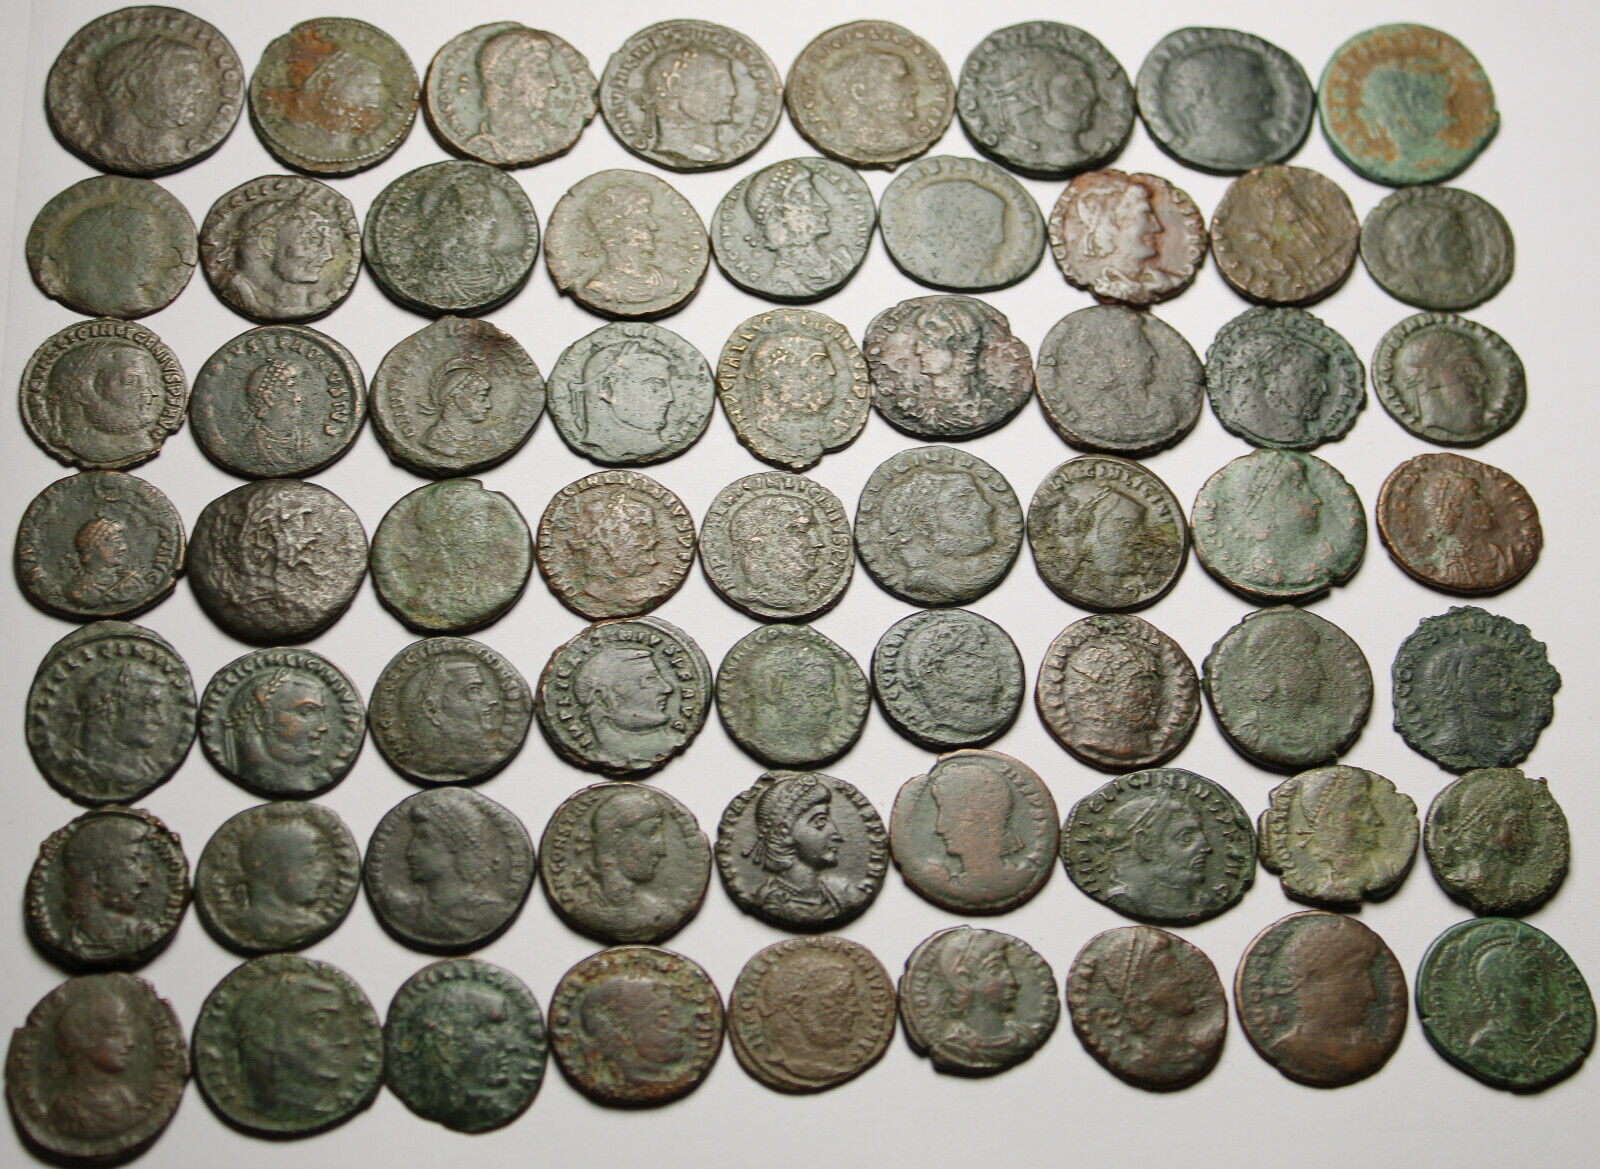 Lot of 3 large coins Rare original Ancient Roman Constantius Licinius Maximianus Без бренда - фотография #6